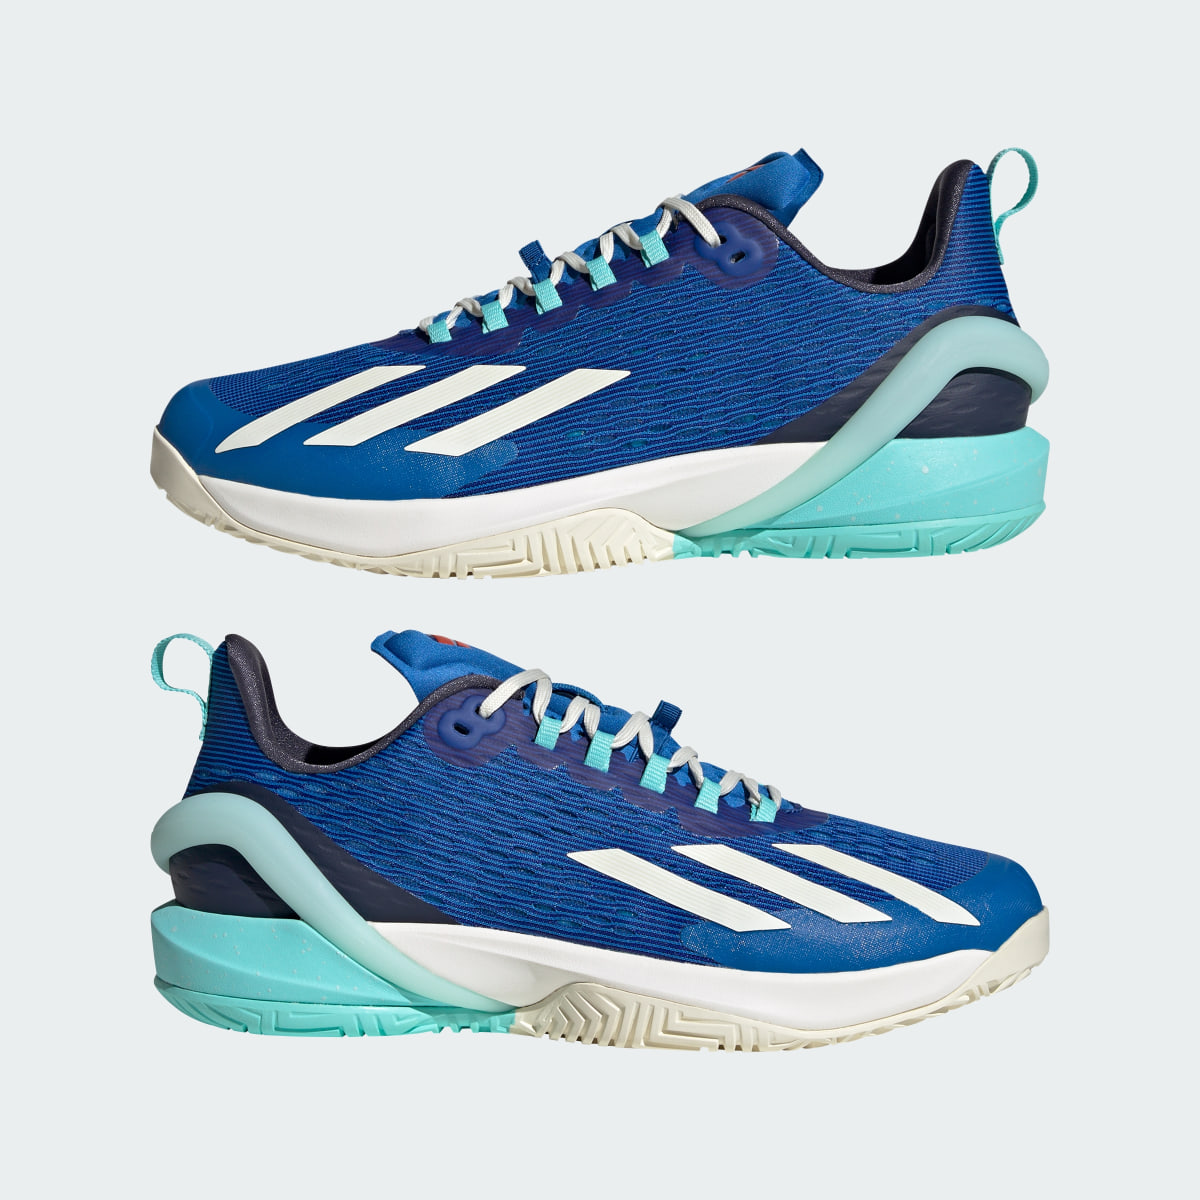 Adidas adizero Cybersonic Tennis Shoes. 8